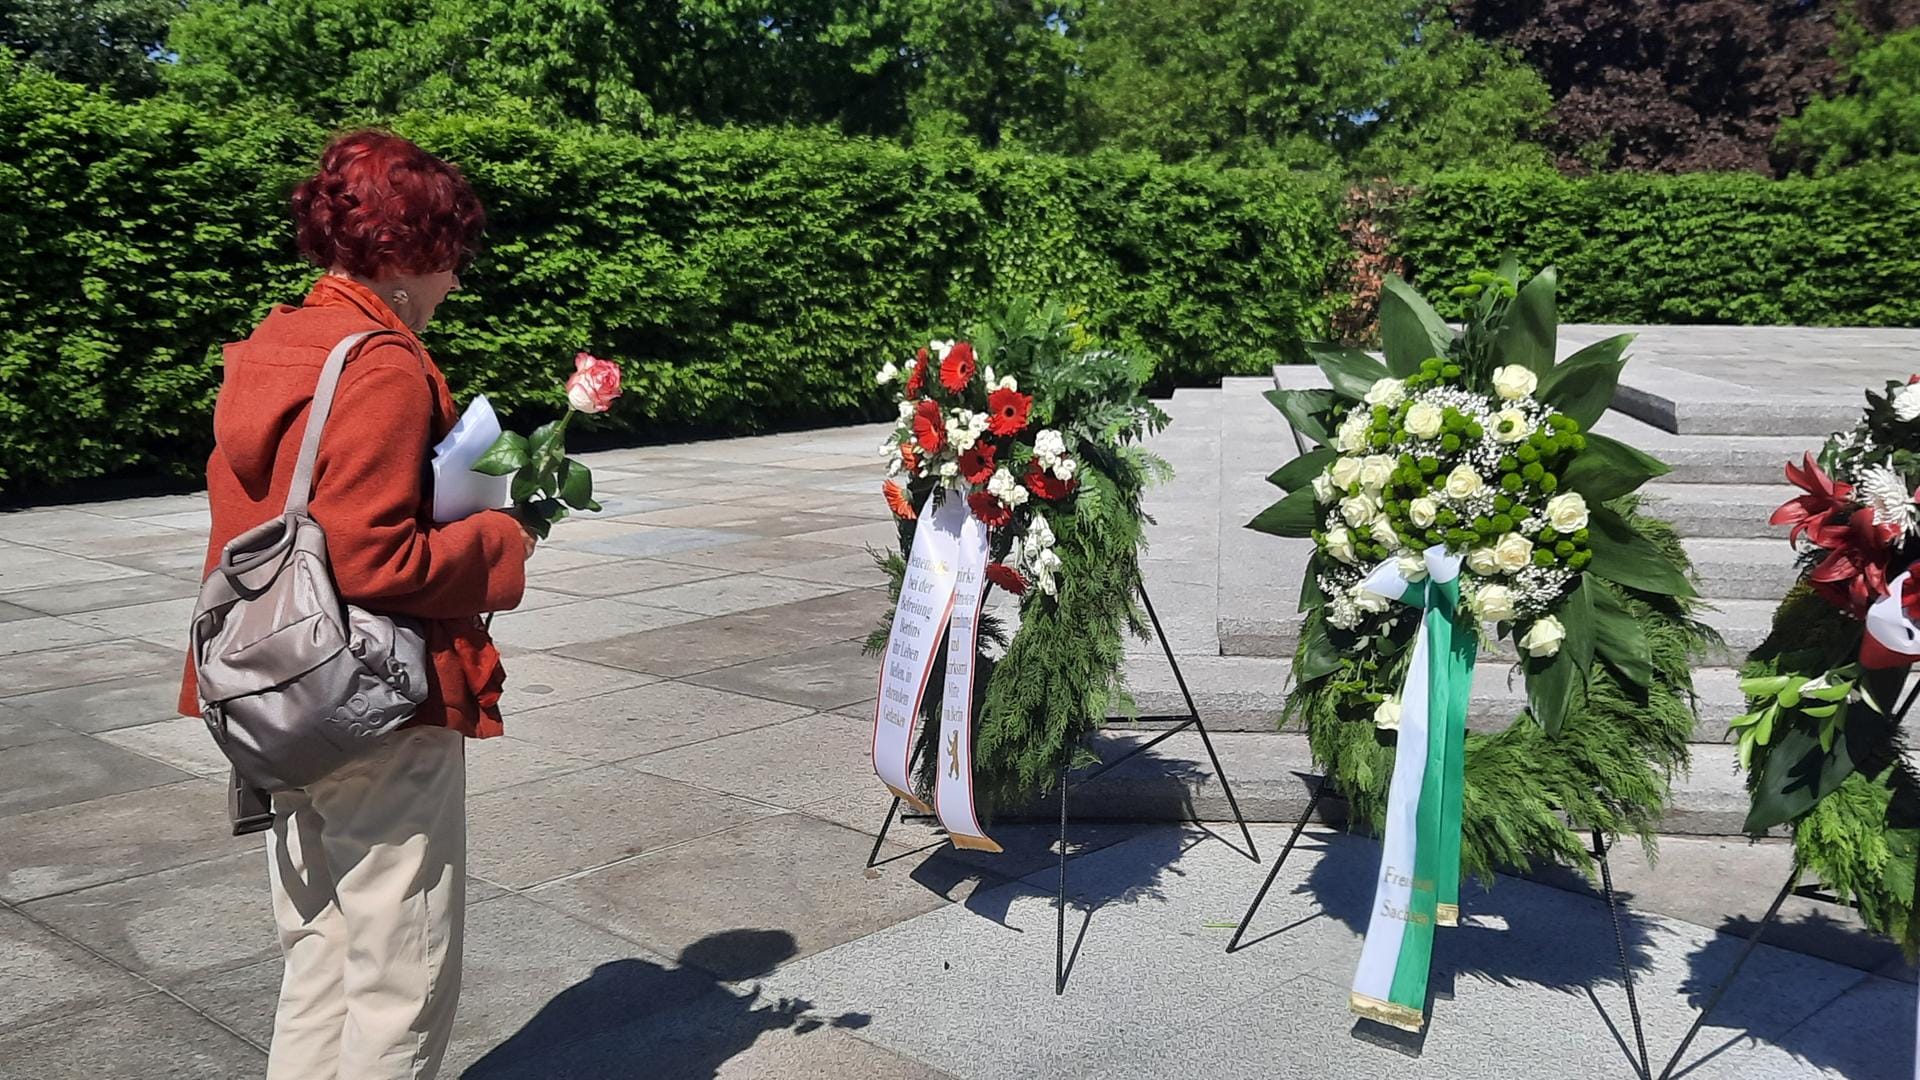 Maria legt eine Rose am Sowjetischen Ehrenmal nieder: Sie differenziert zwischen Russland und der Sowjetunion.